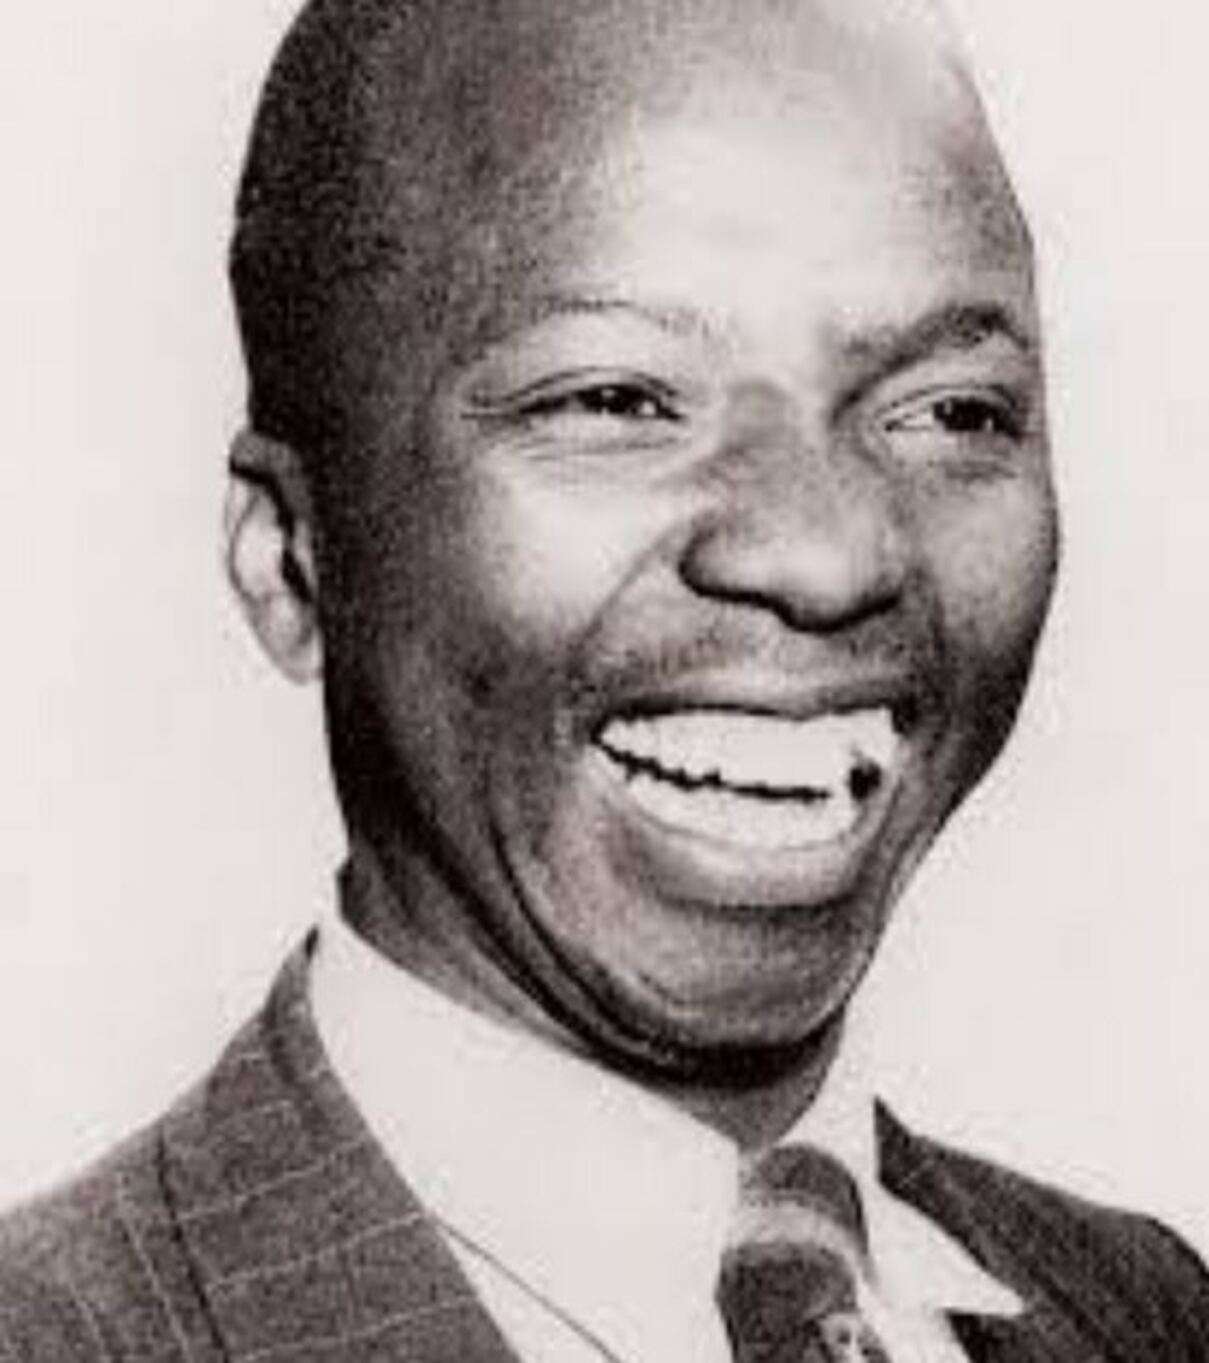 Anton Muziwakhe Lembede